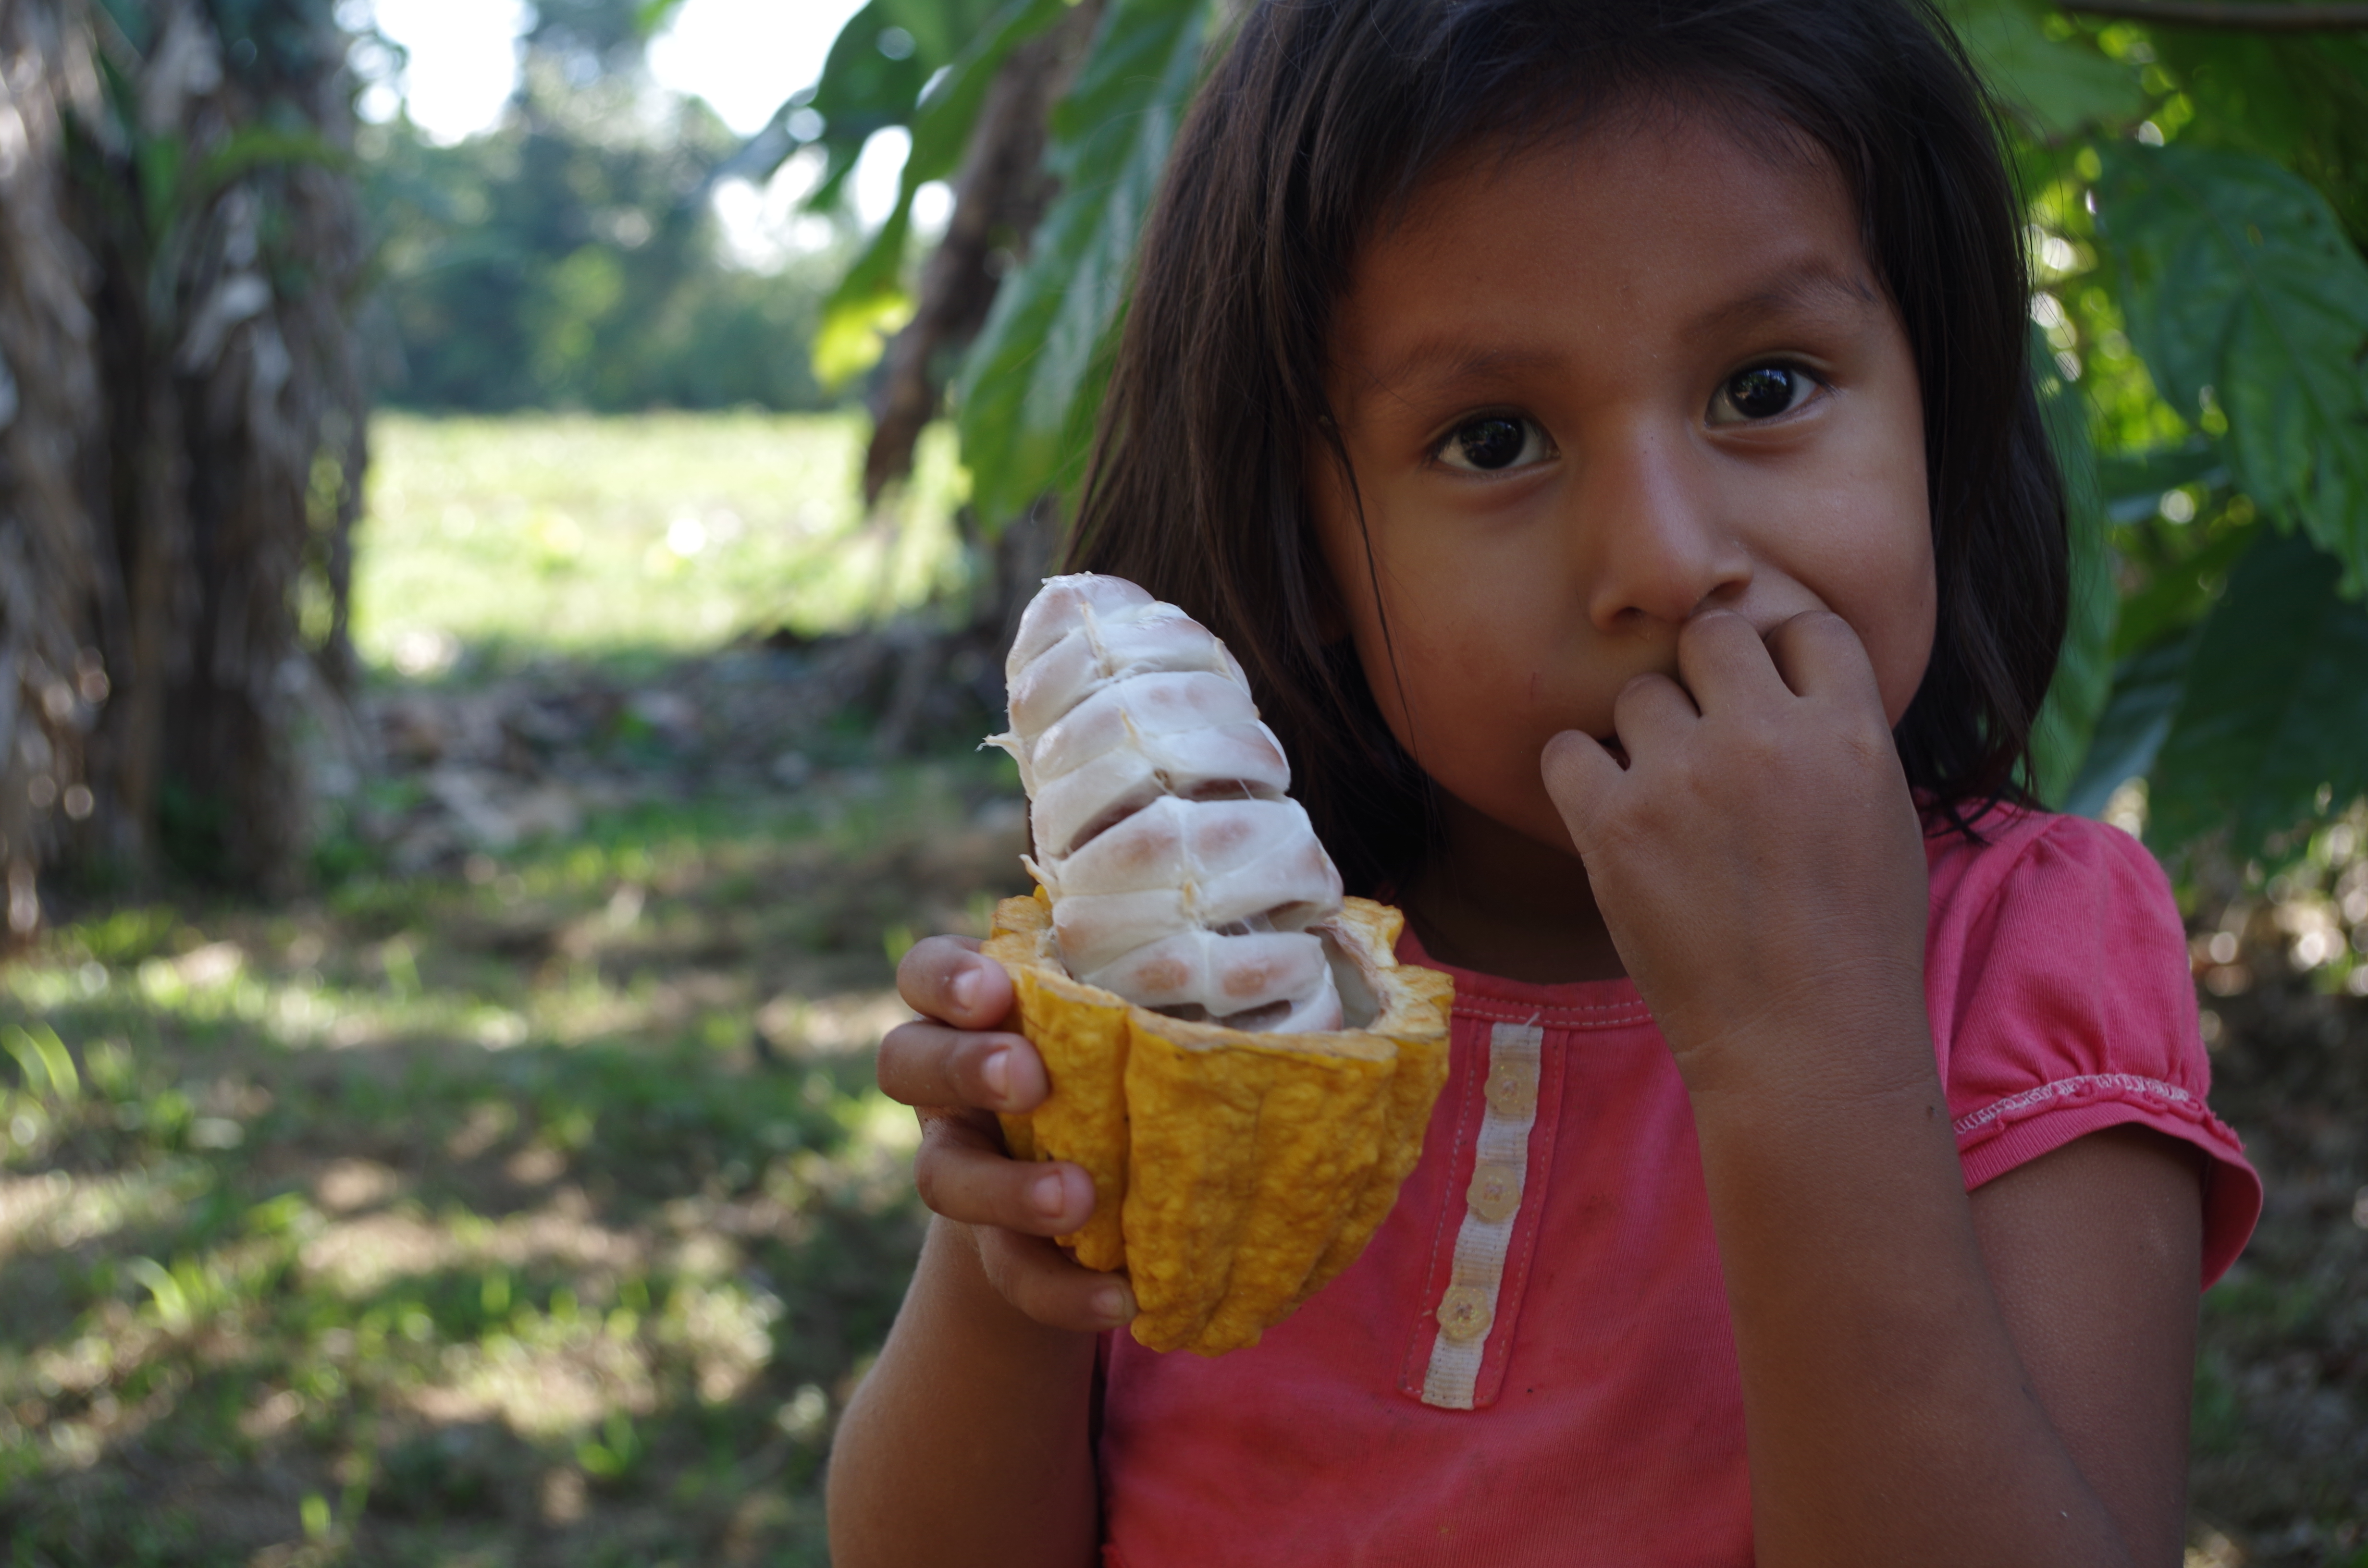 Kakao für eine bessere Zukunft der Kinder in der Region! © Nils Krauer